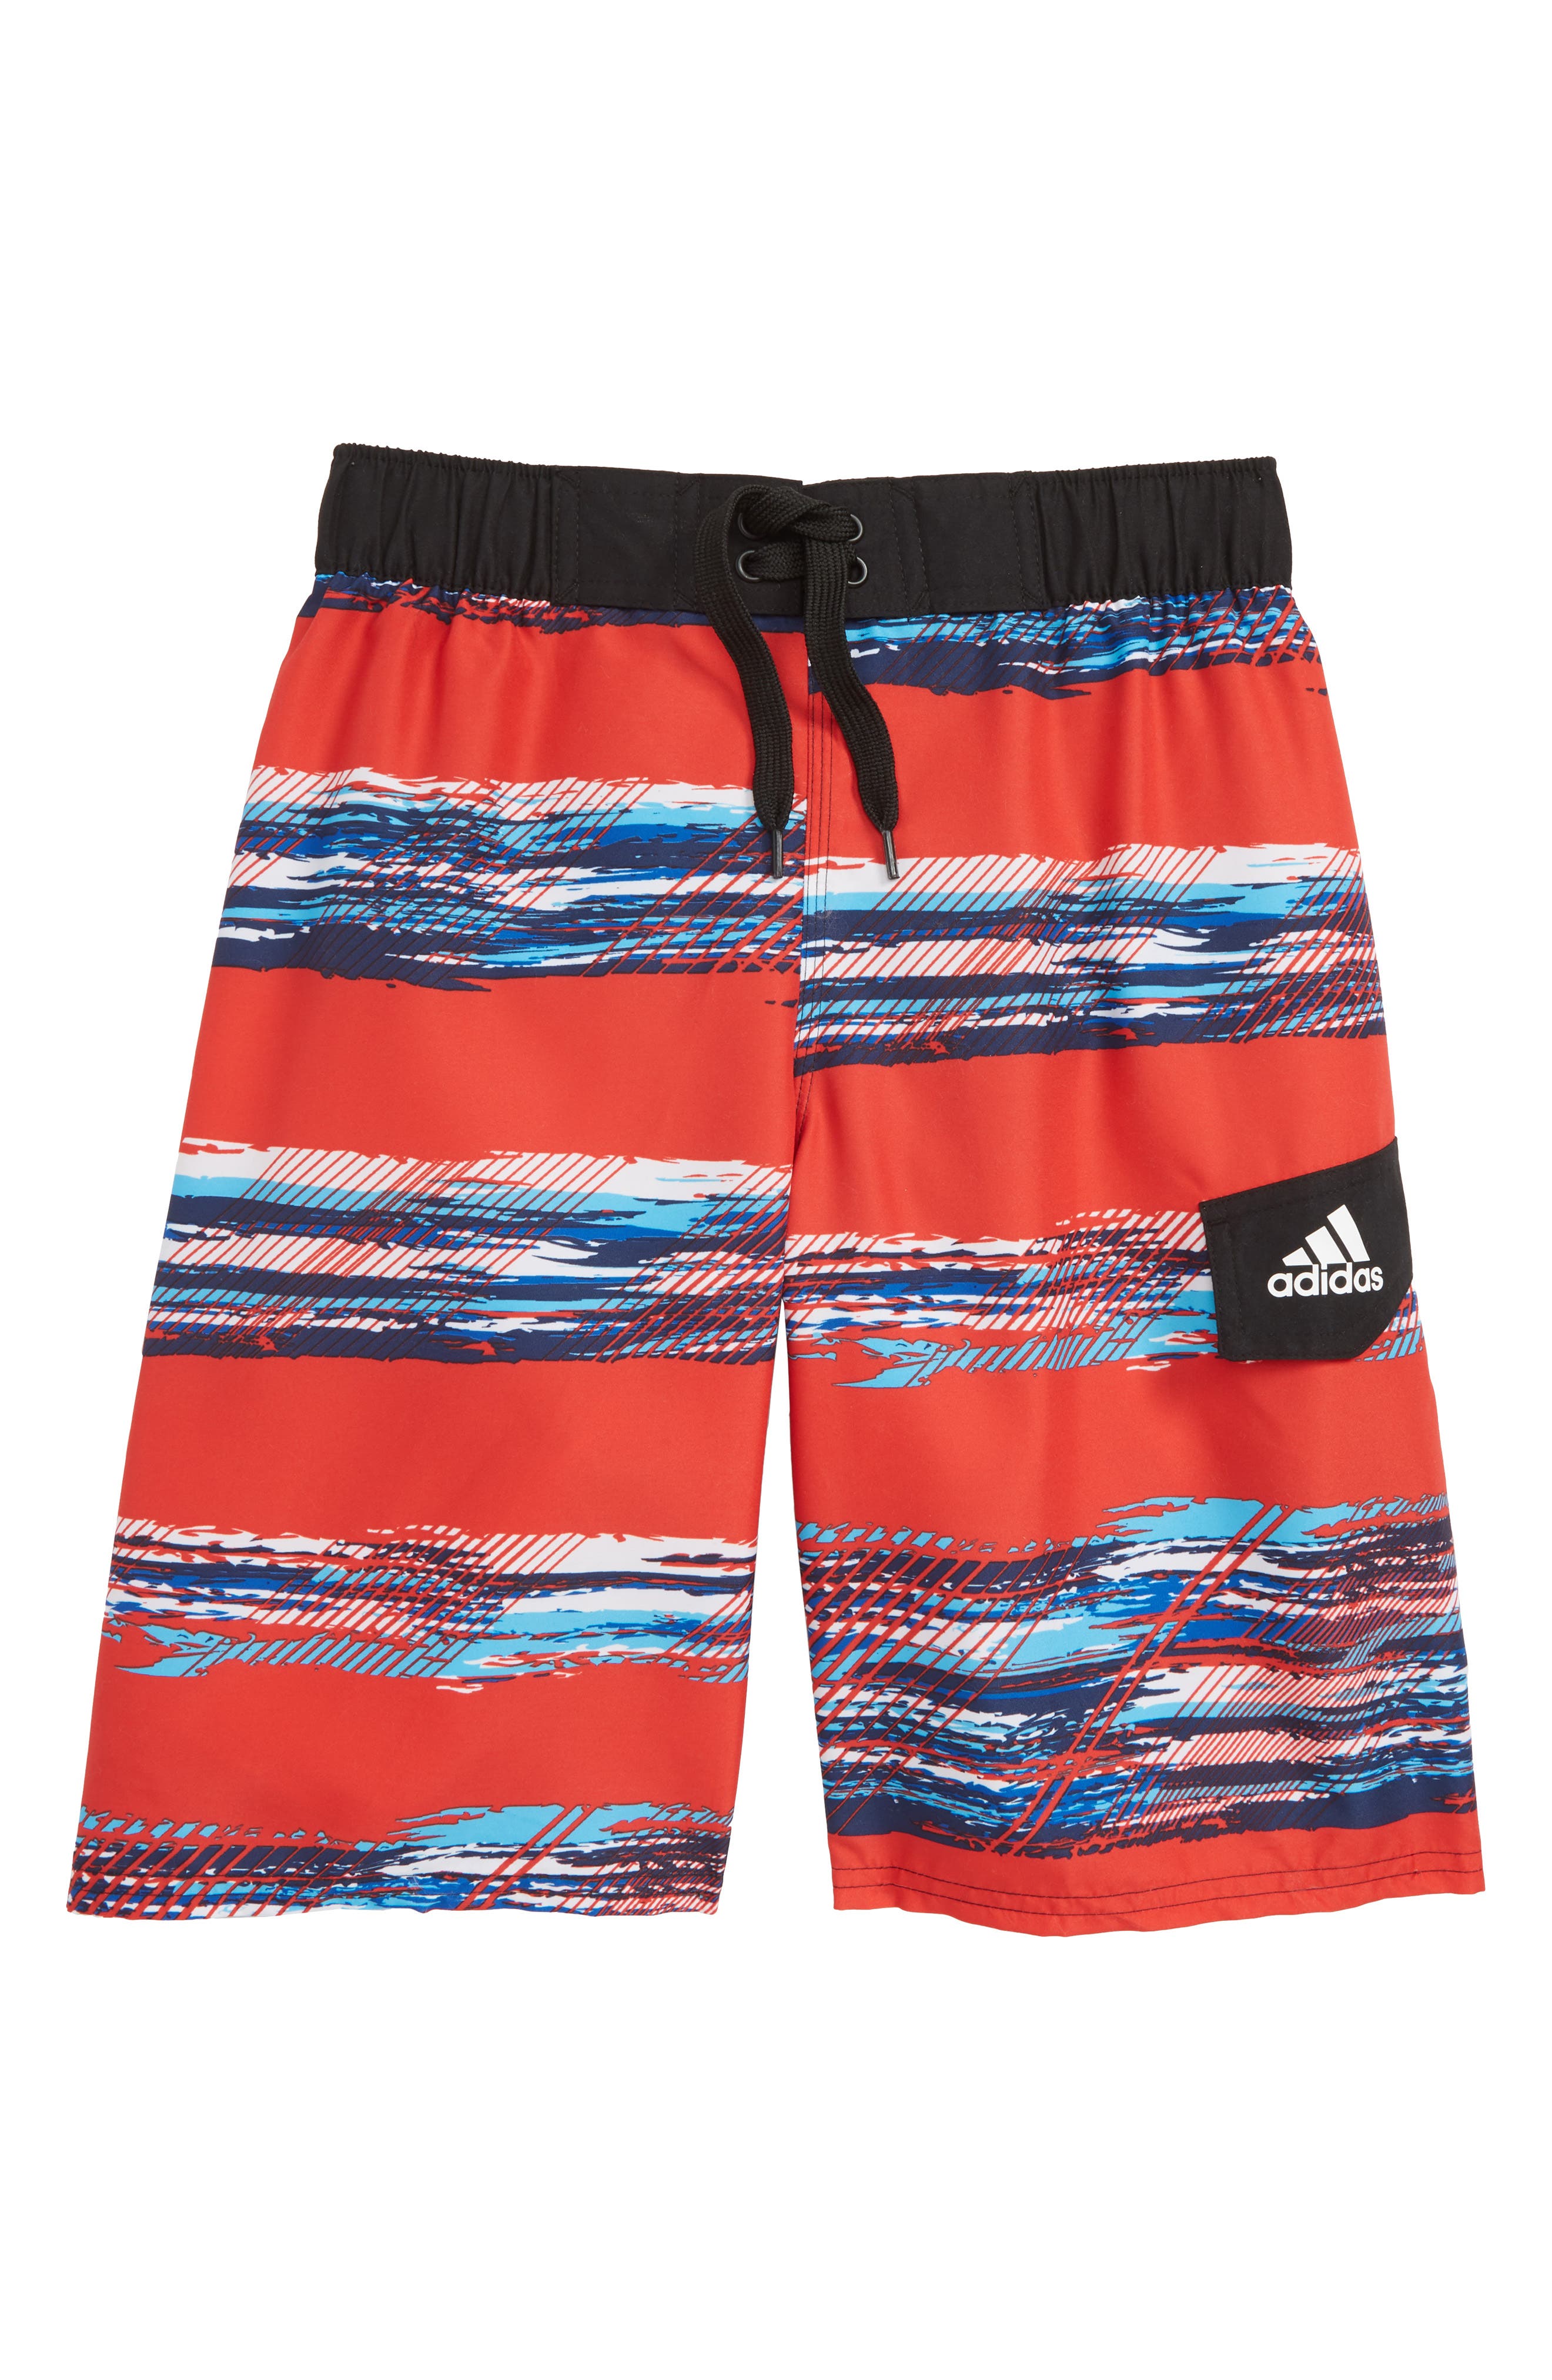 adidas swim shorts boys